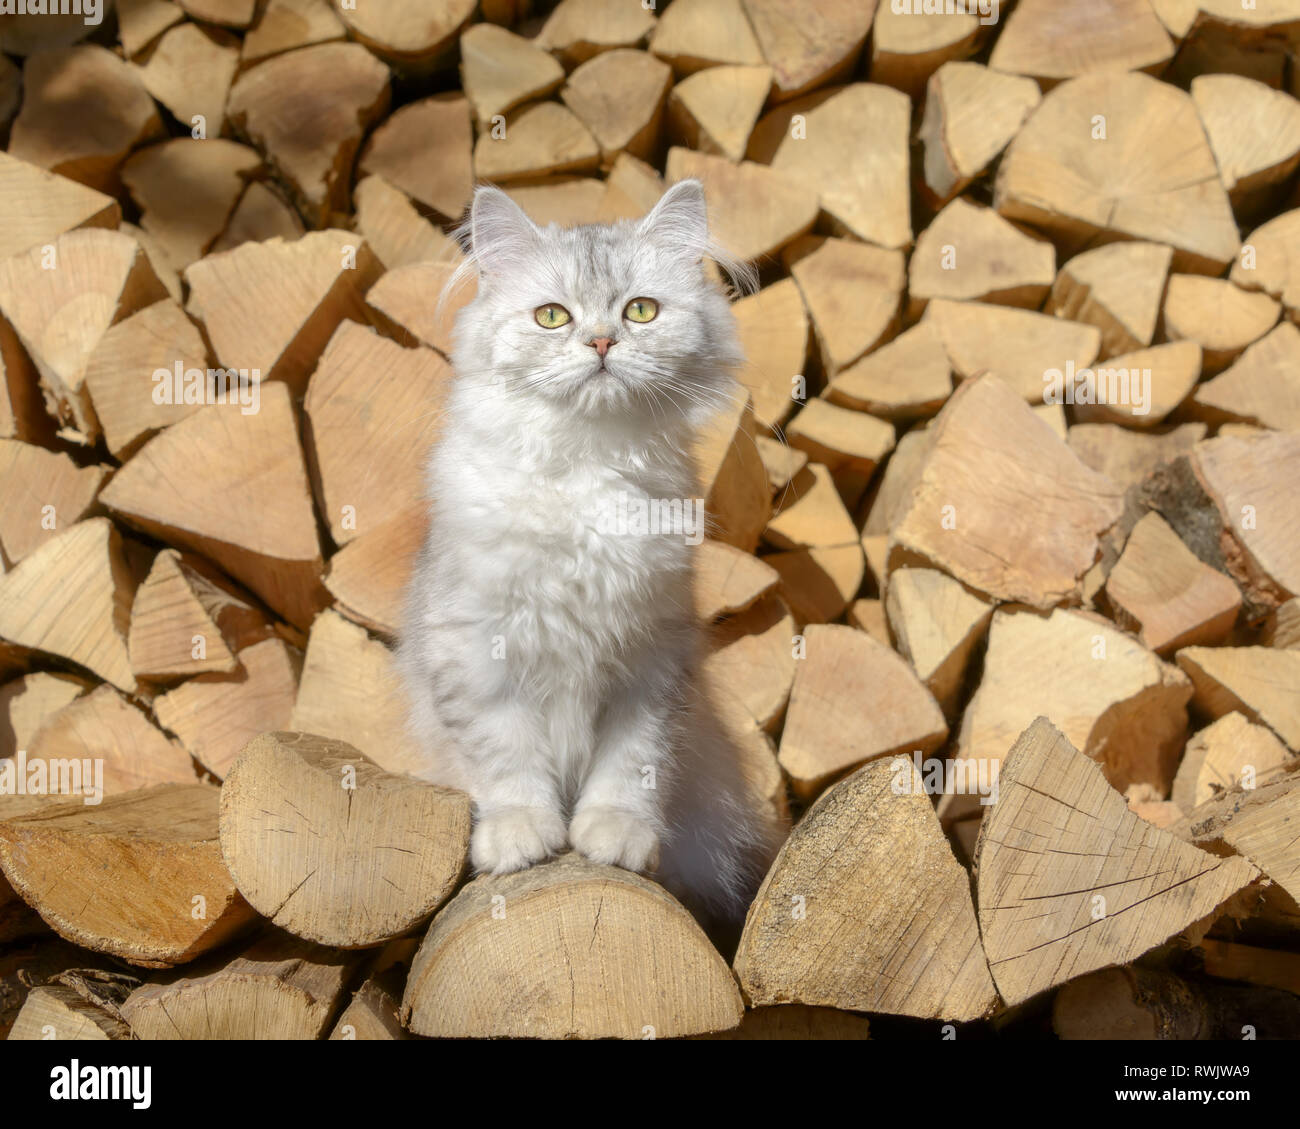 Carino Young British Longhair Cat kitten, nero-argento-Spotted Tabby-, seduto su una pila di registri in un giardino e guardando curiosamente Foto Stock